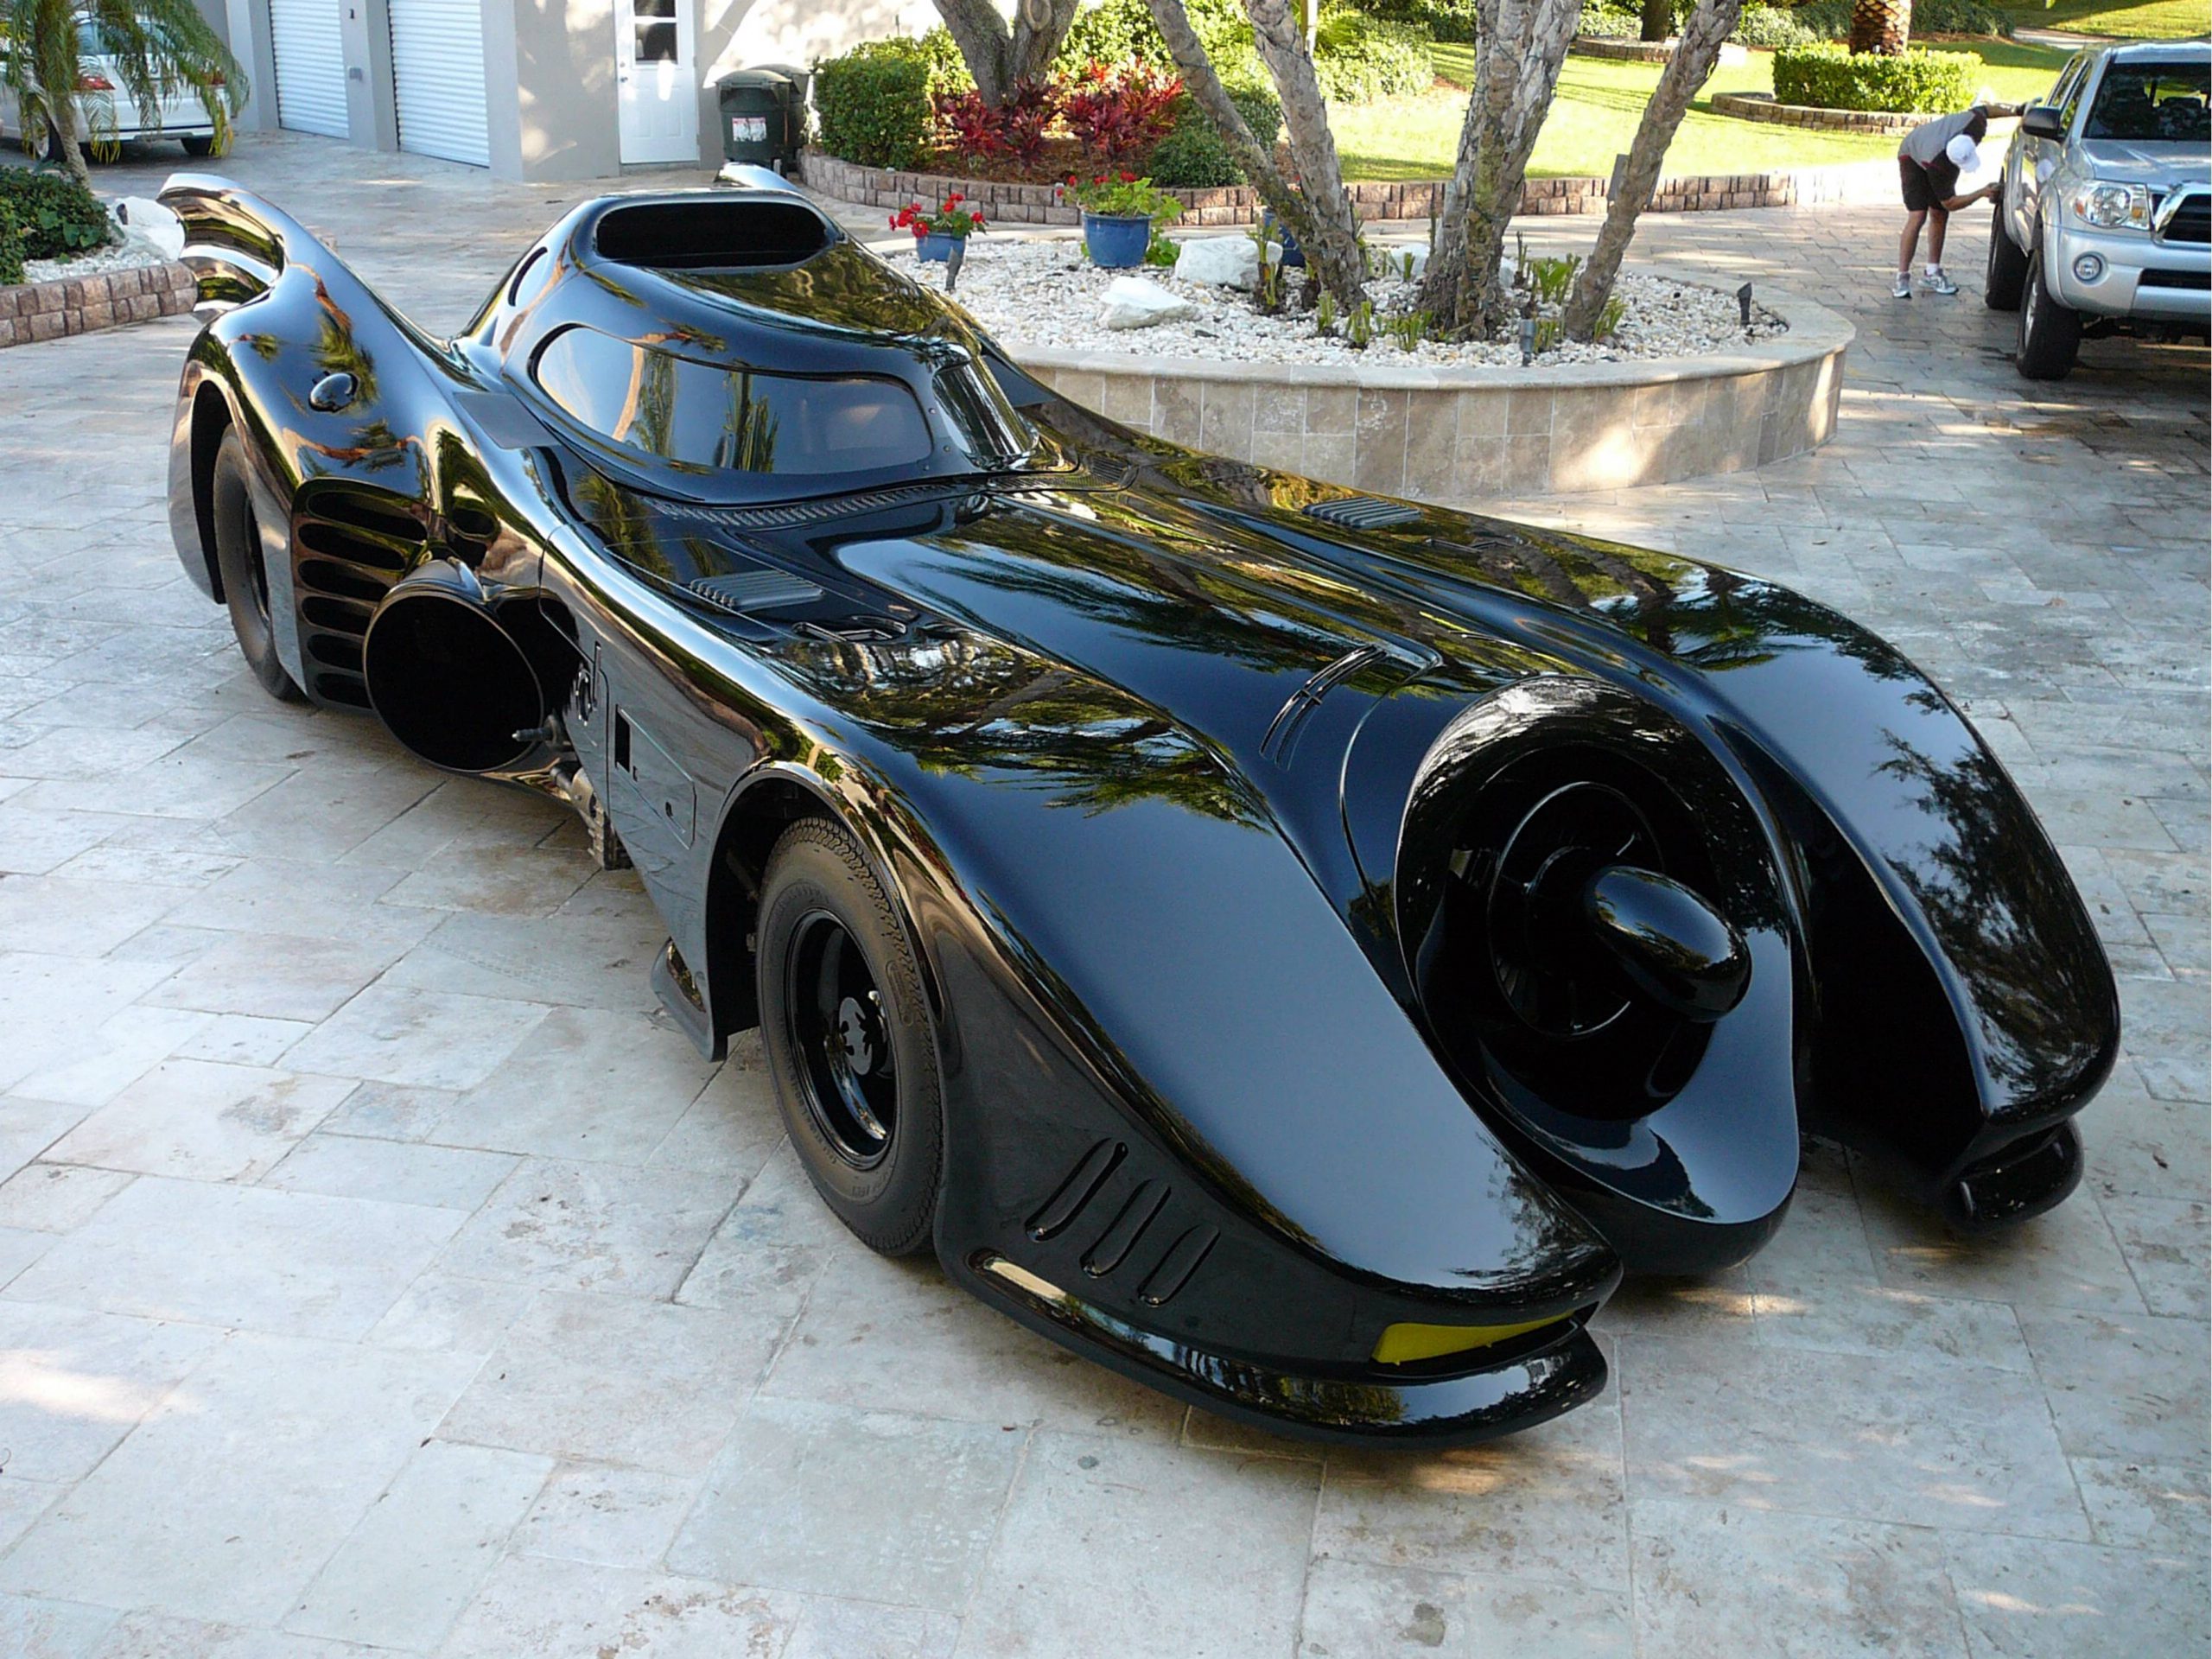 Batmobile in vendita: la macchina dell'uomo pipistrello vale 145 mila dollari